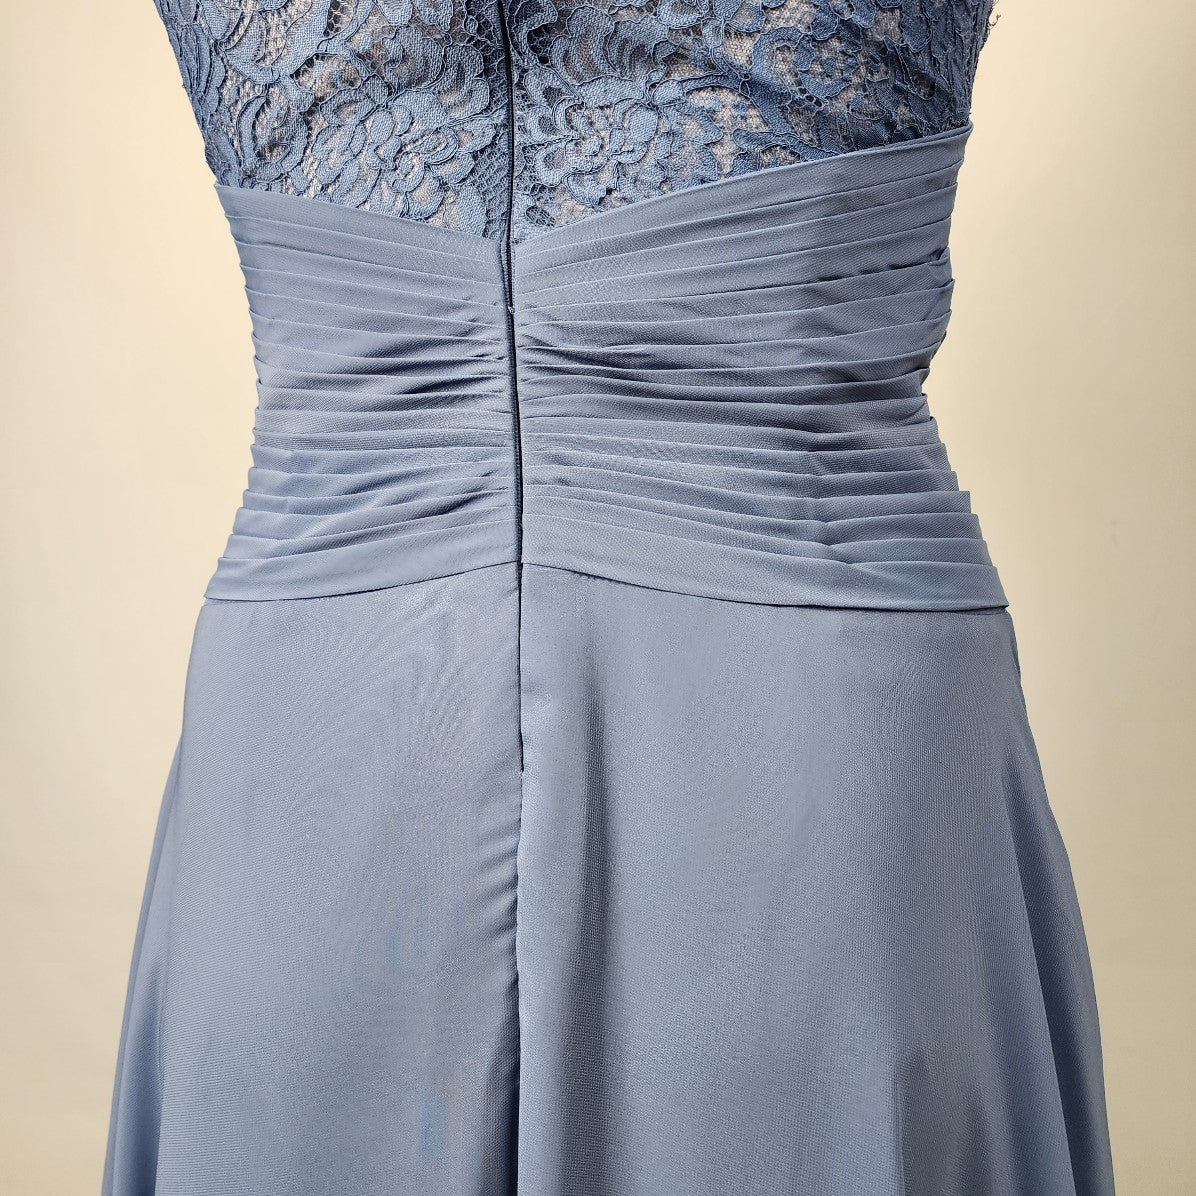 JJ'S House Blue Lace Halter Neck Bridesmaid Gown Size 1XL